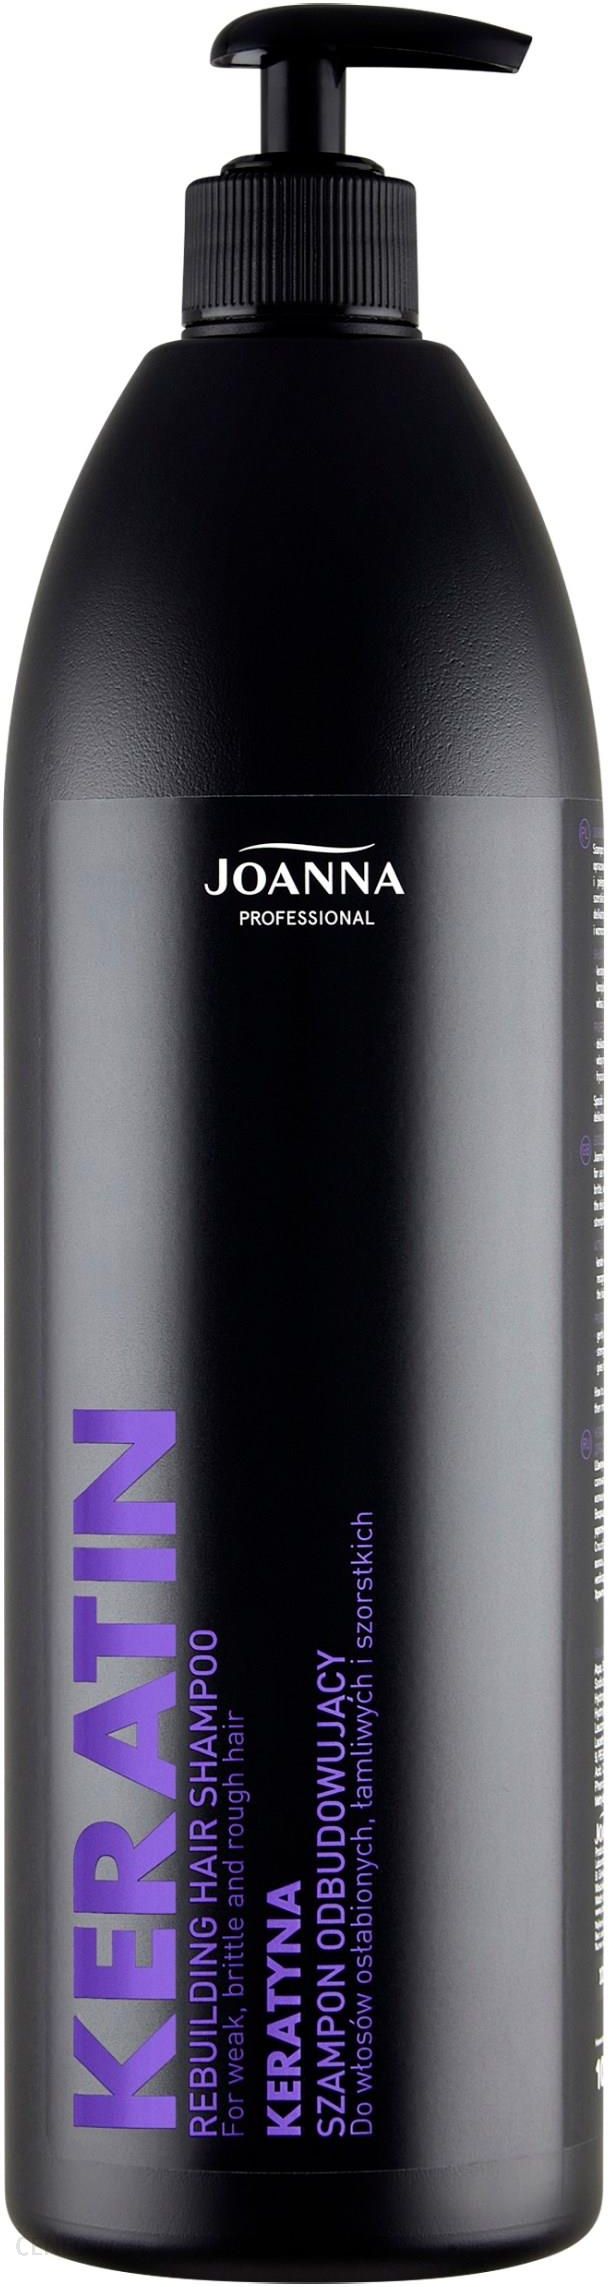 joanna szampon 1000ml z kreatyna apteka